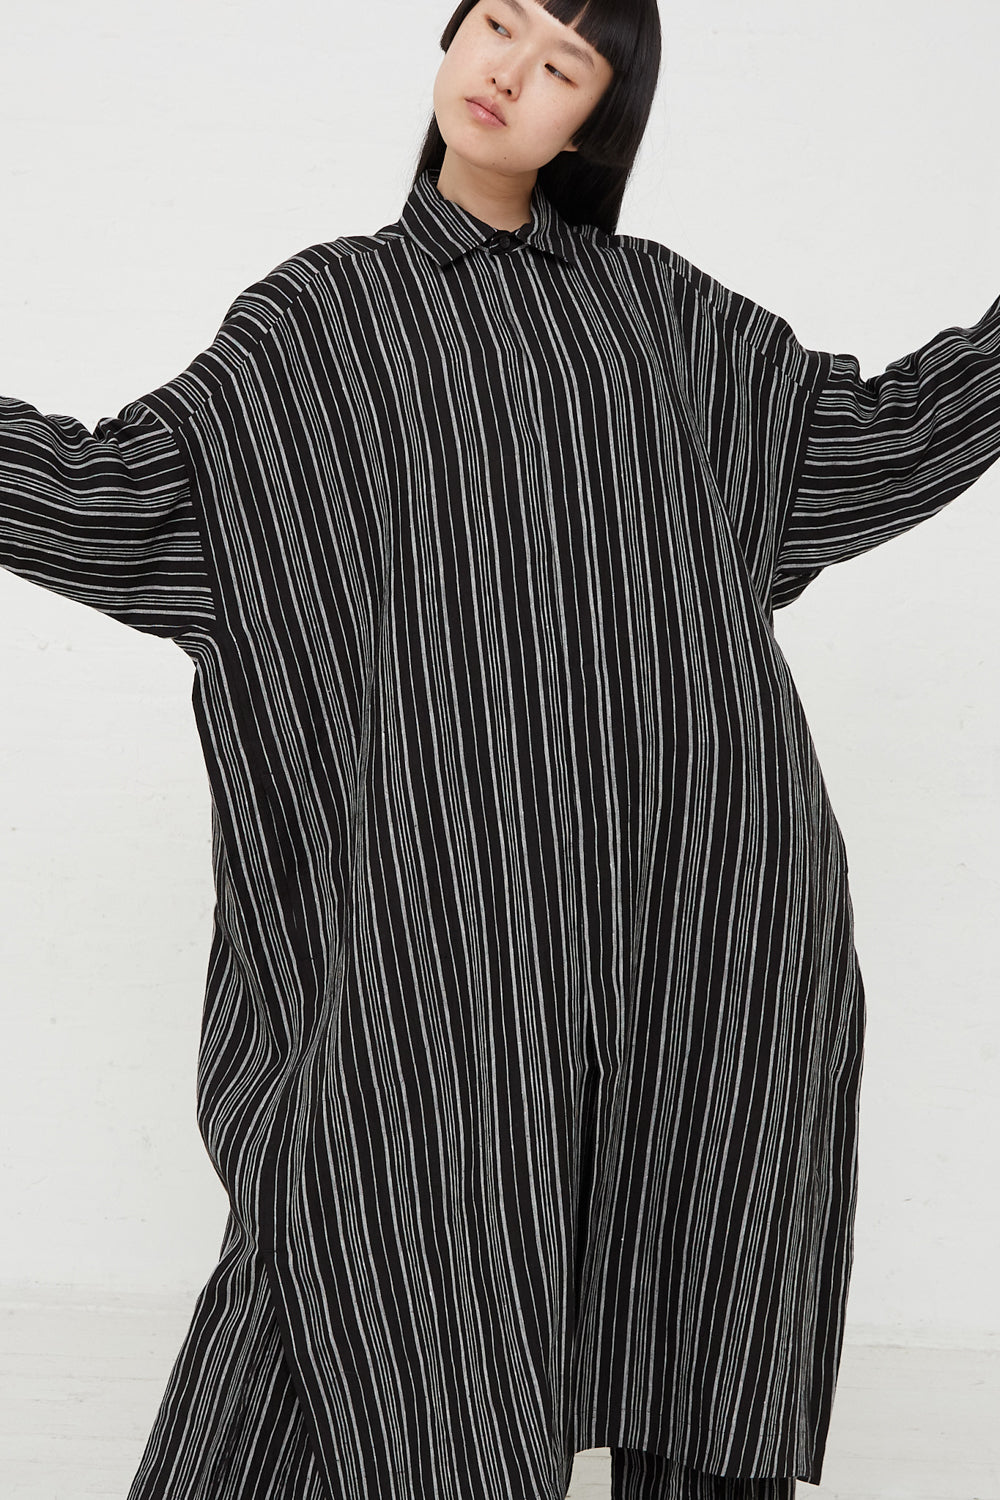 Jan-Jan Van Essche - Linen Batist Shirt in Contrast Stripe front detail